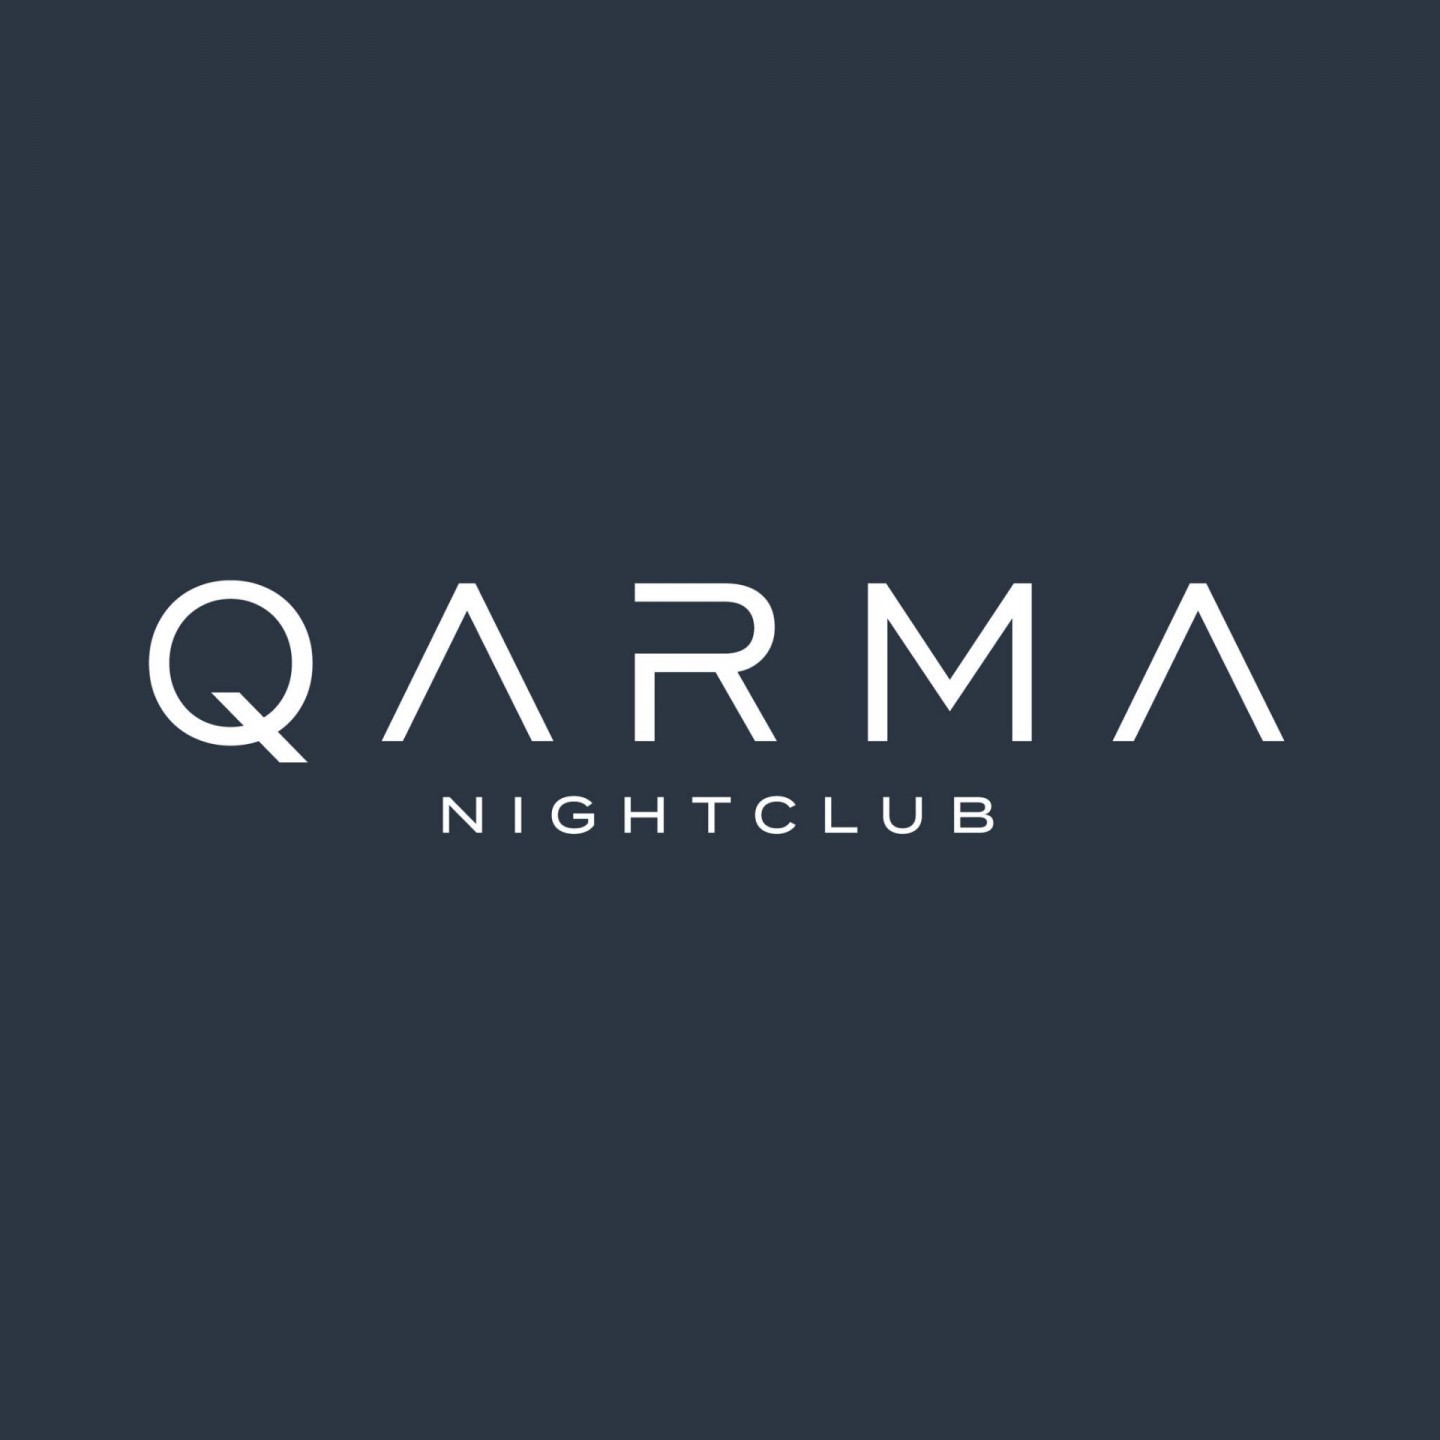 Qarma Nightclub